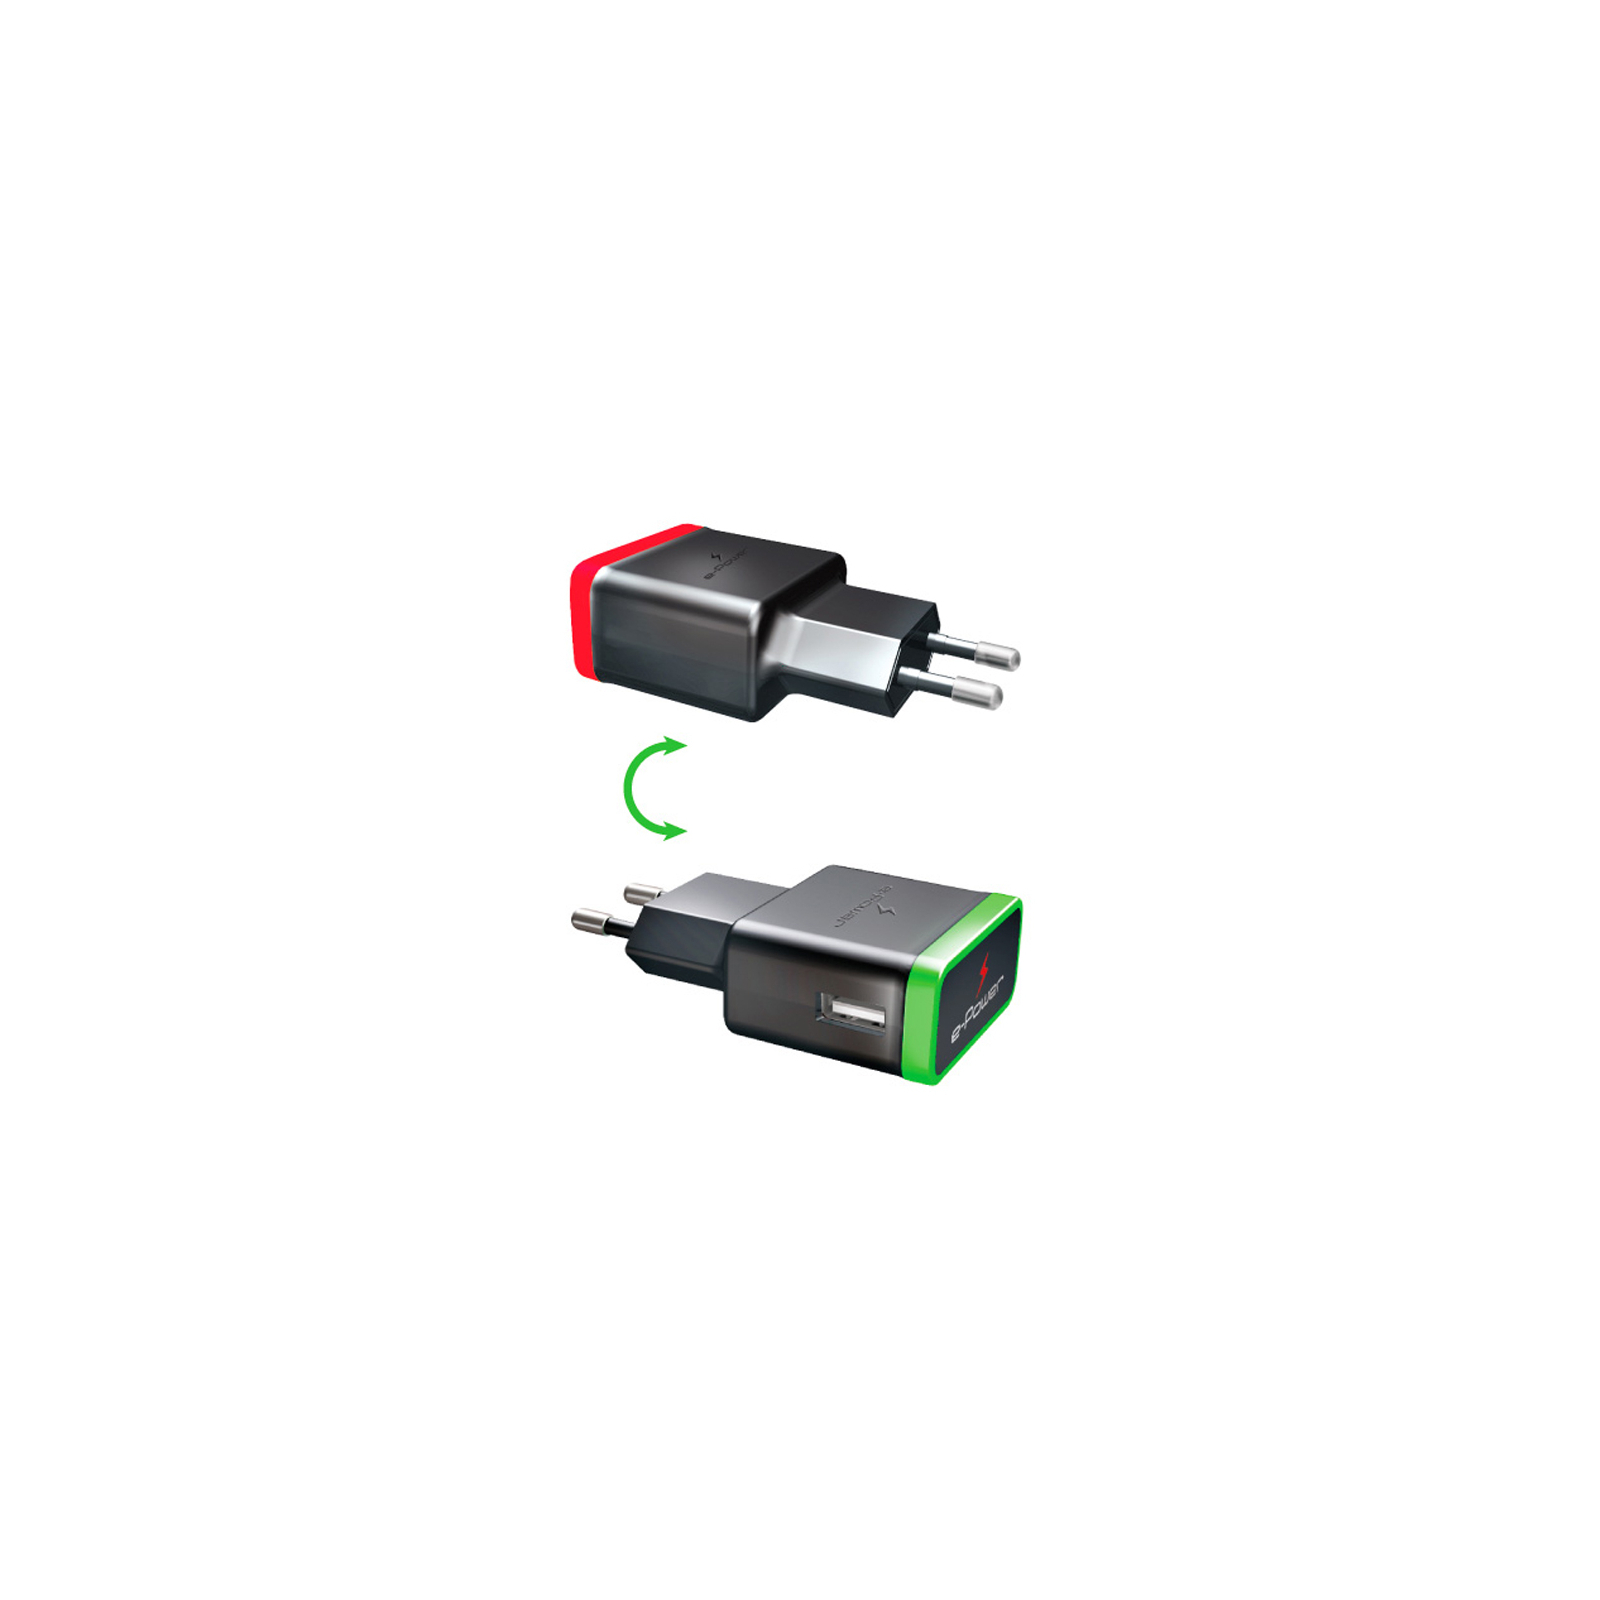 Зарядное устройство E-power 1 * USB 1A (EP701HAS) изображение 2